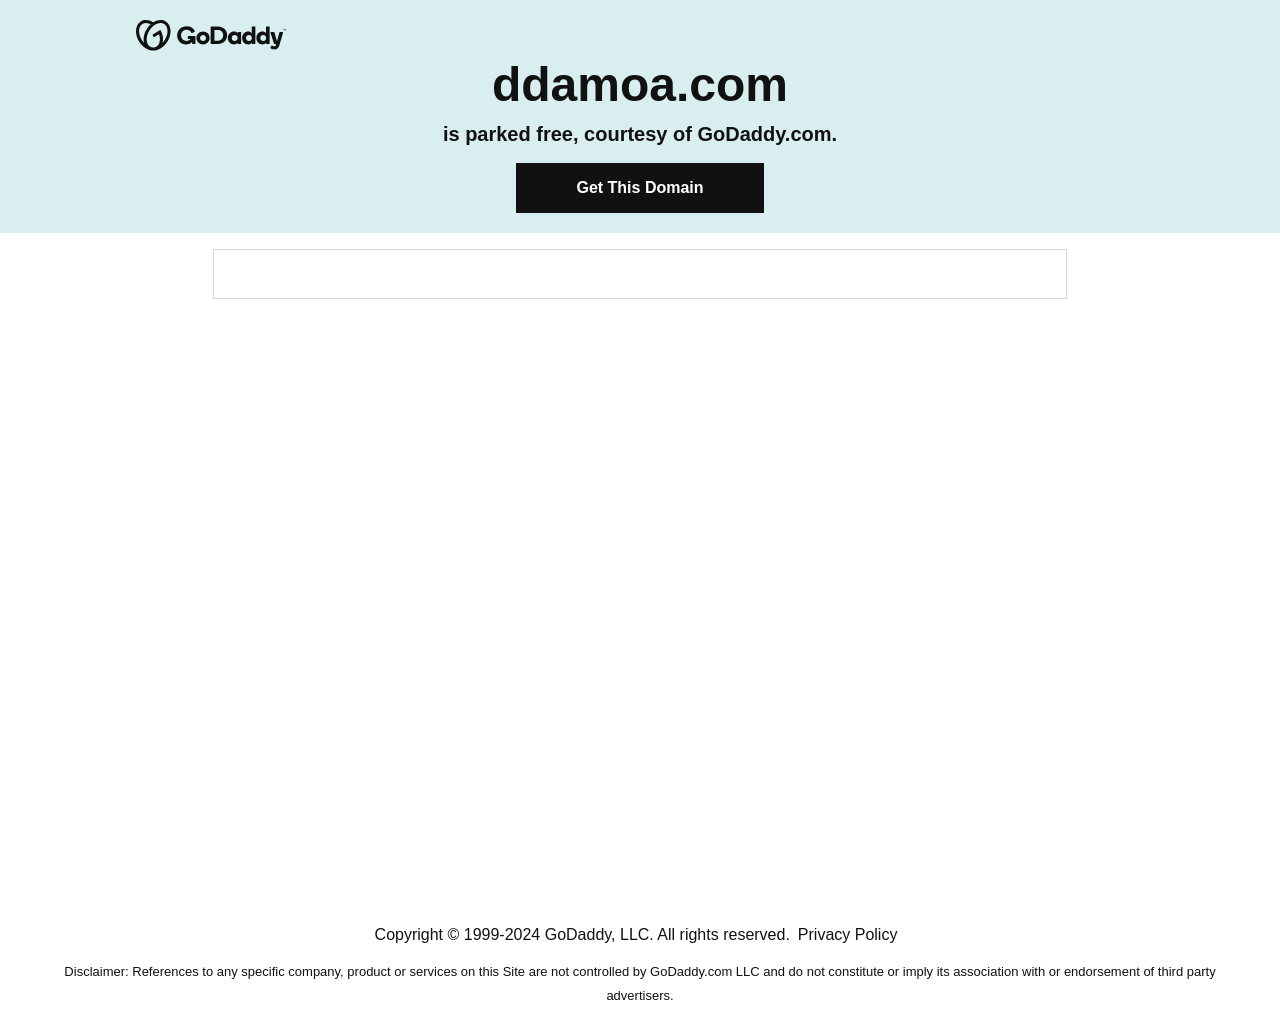 ddamoa.com